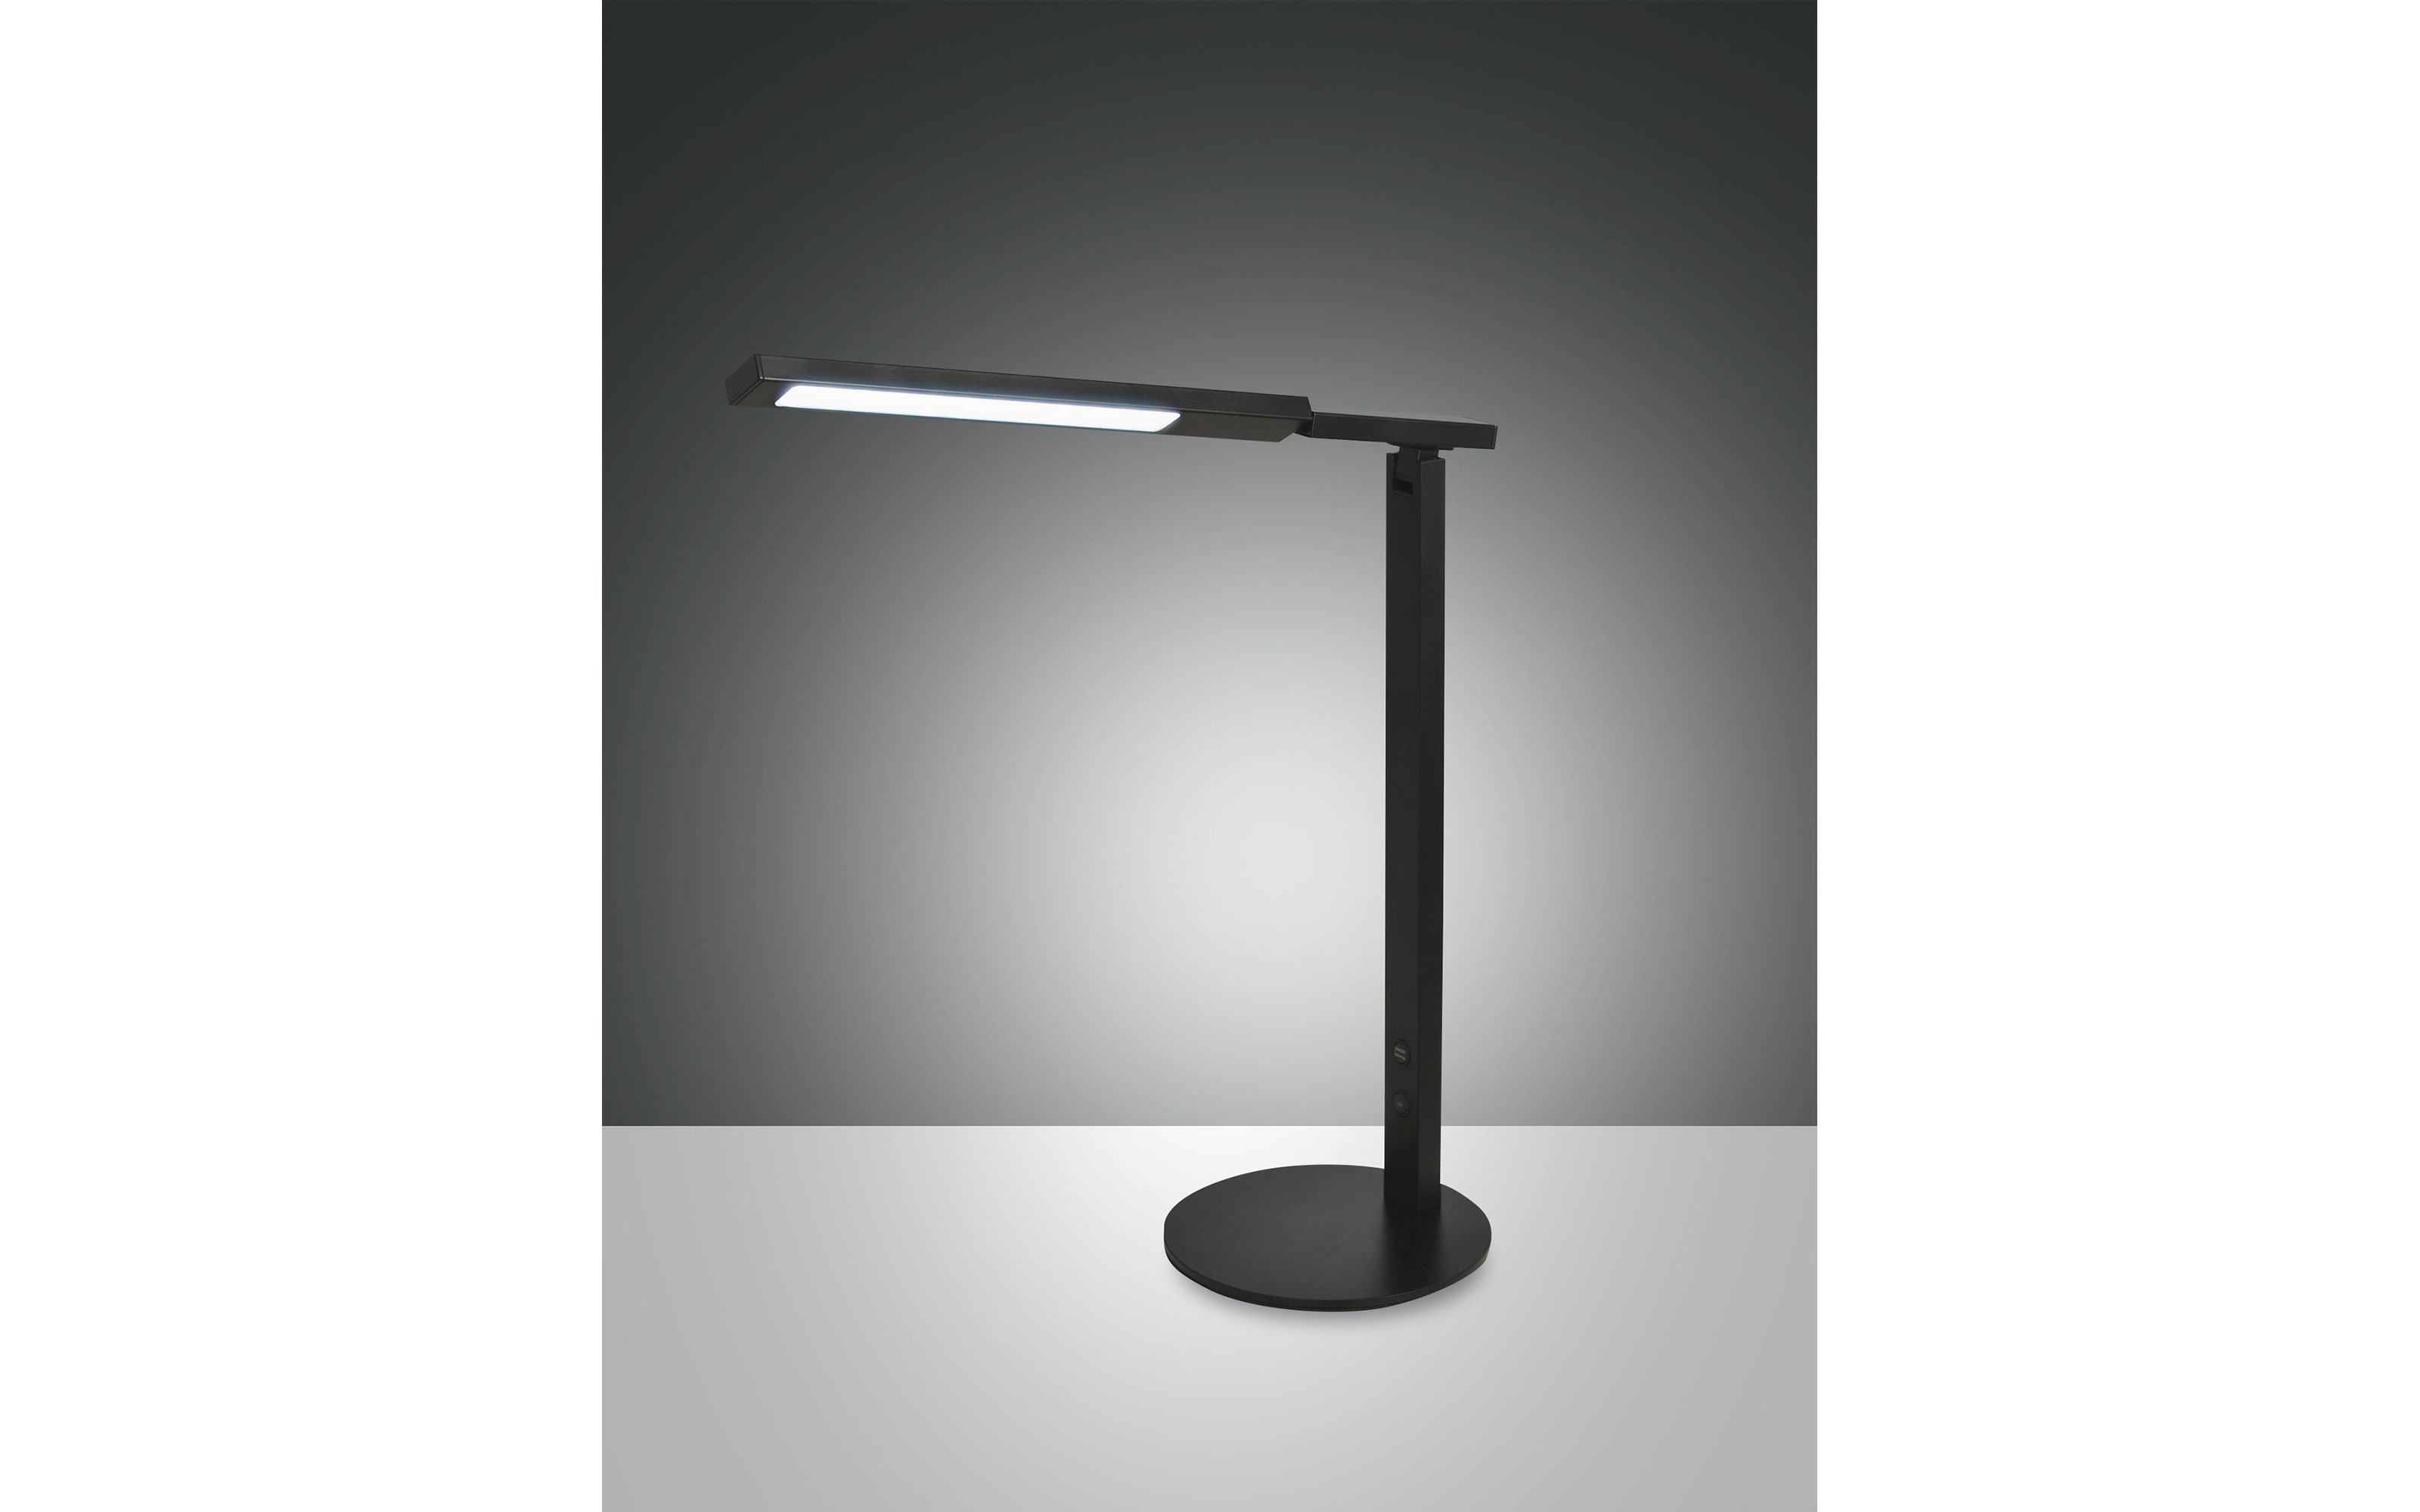 LED-Tischleuchte Ideal, schwarz, 69 cm